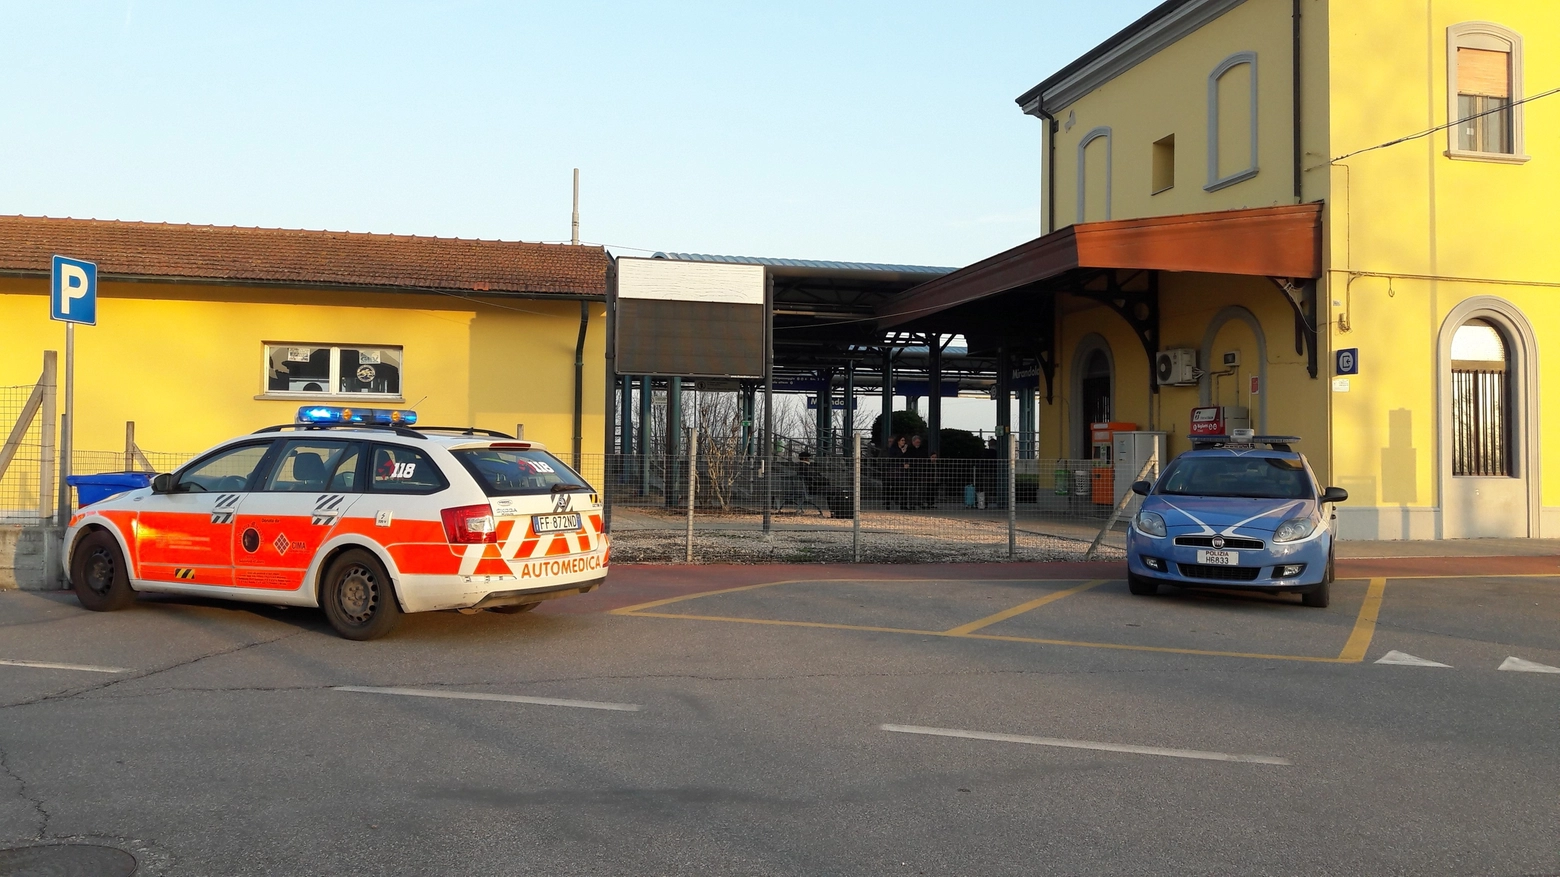 Polizia e sanitari davanti alla stazione di Mirandola (foto Bruschi)